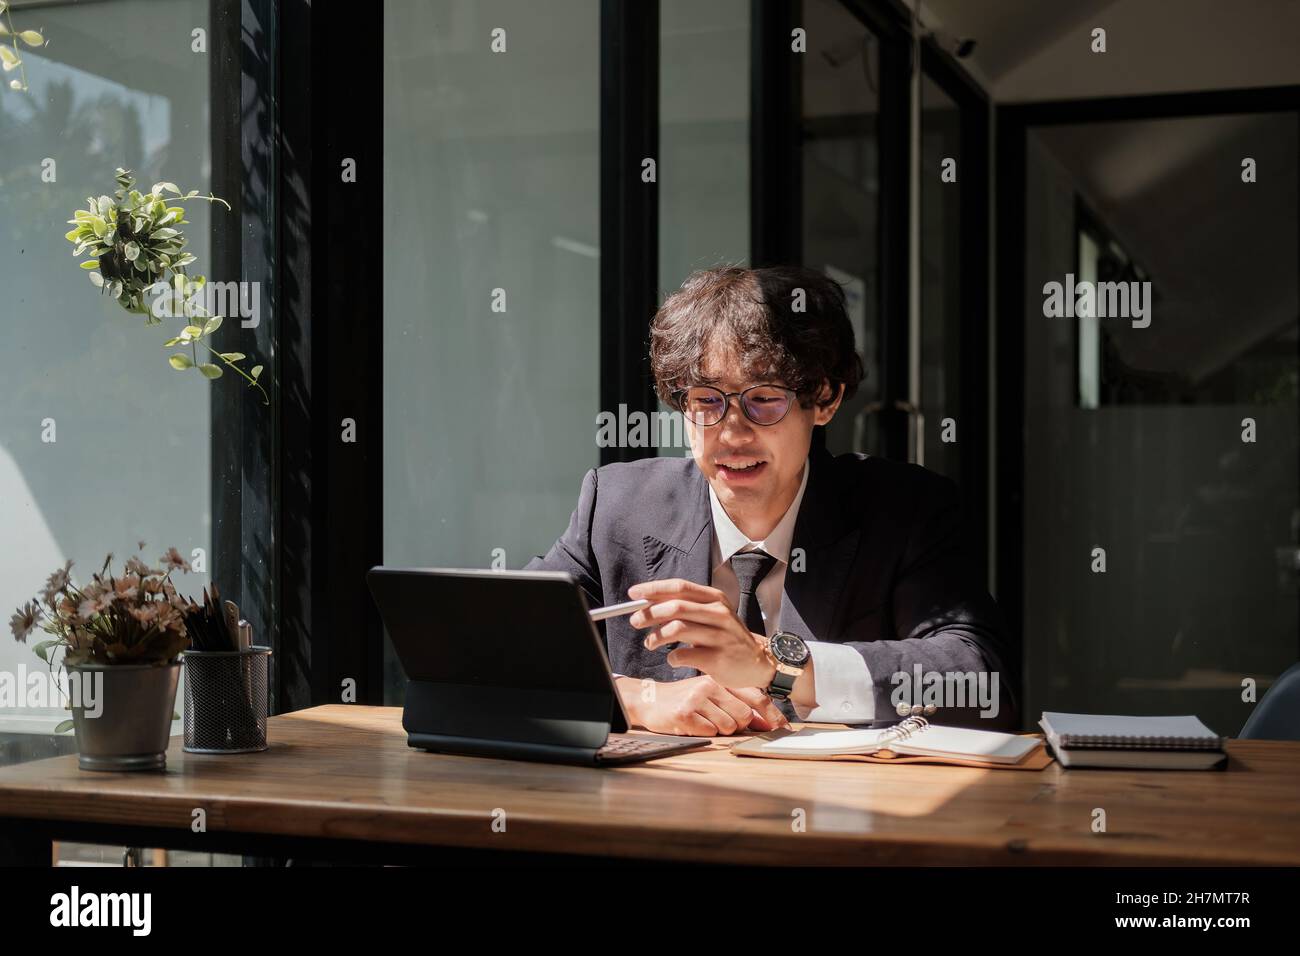 Jeune homme d'affaires asiatique en lunettes travaillant à distance avec une tablette numérique, assis à une table en bois dans un café.Agréable homme heureux communiquant dans le social Banque D'Images